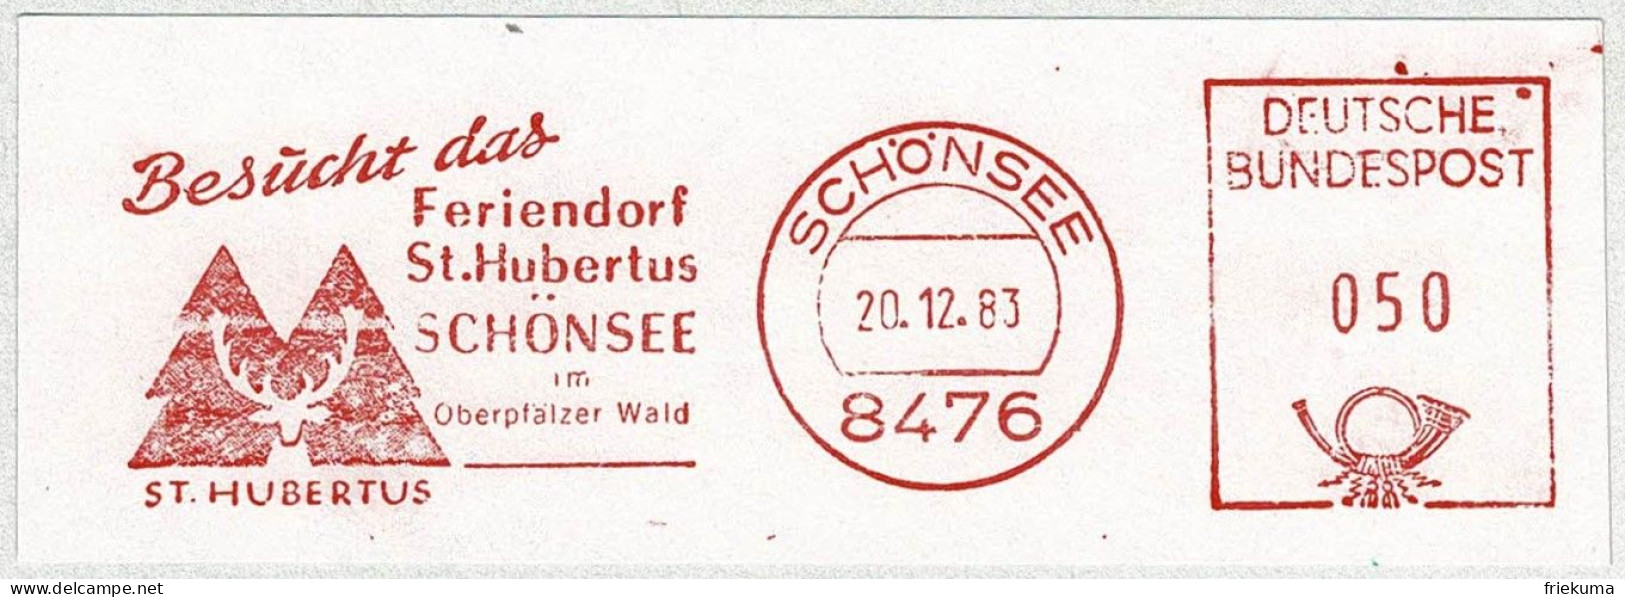 Deutsche Bundespost 1983, Freistempel / EMA / Meterstamp Schönsee, Feriendorf St. Hubertus, Jagd - Hotels, Restaurants & Cafés